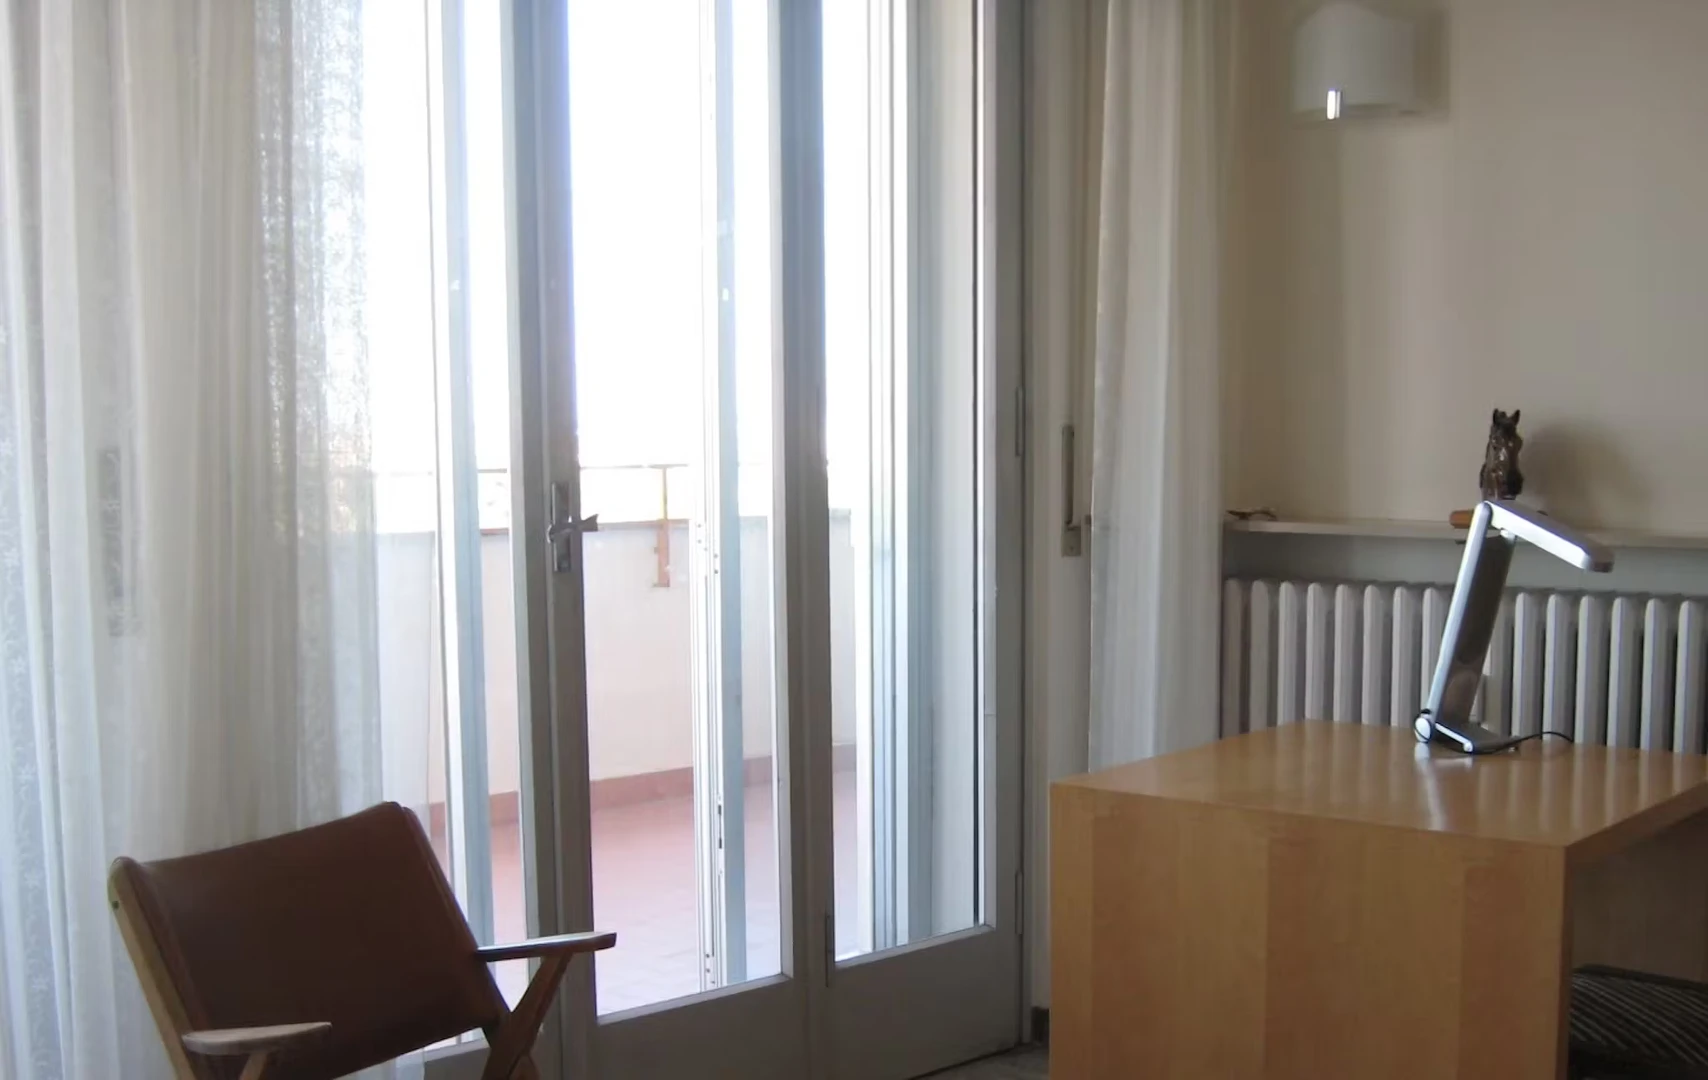 Forlì de çift kişilik yataklı kiralık oda